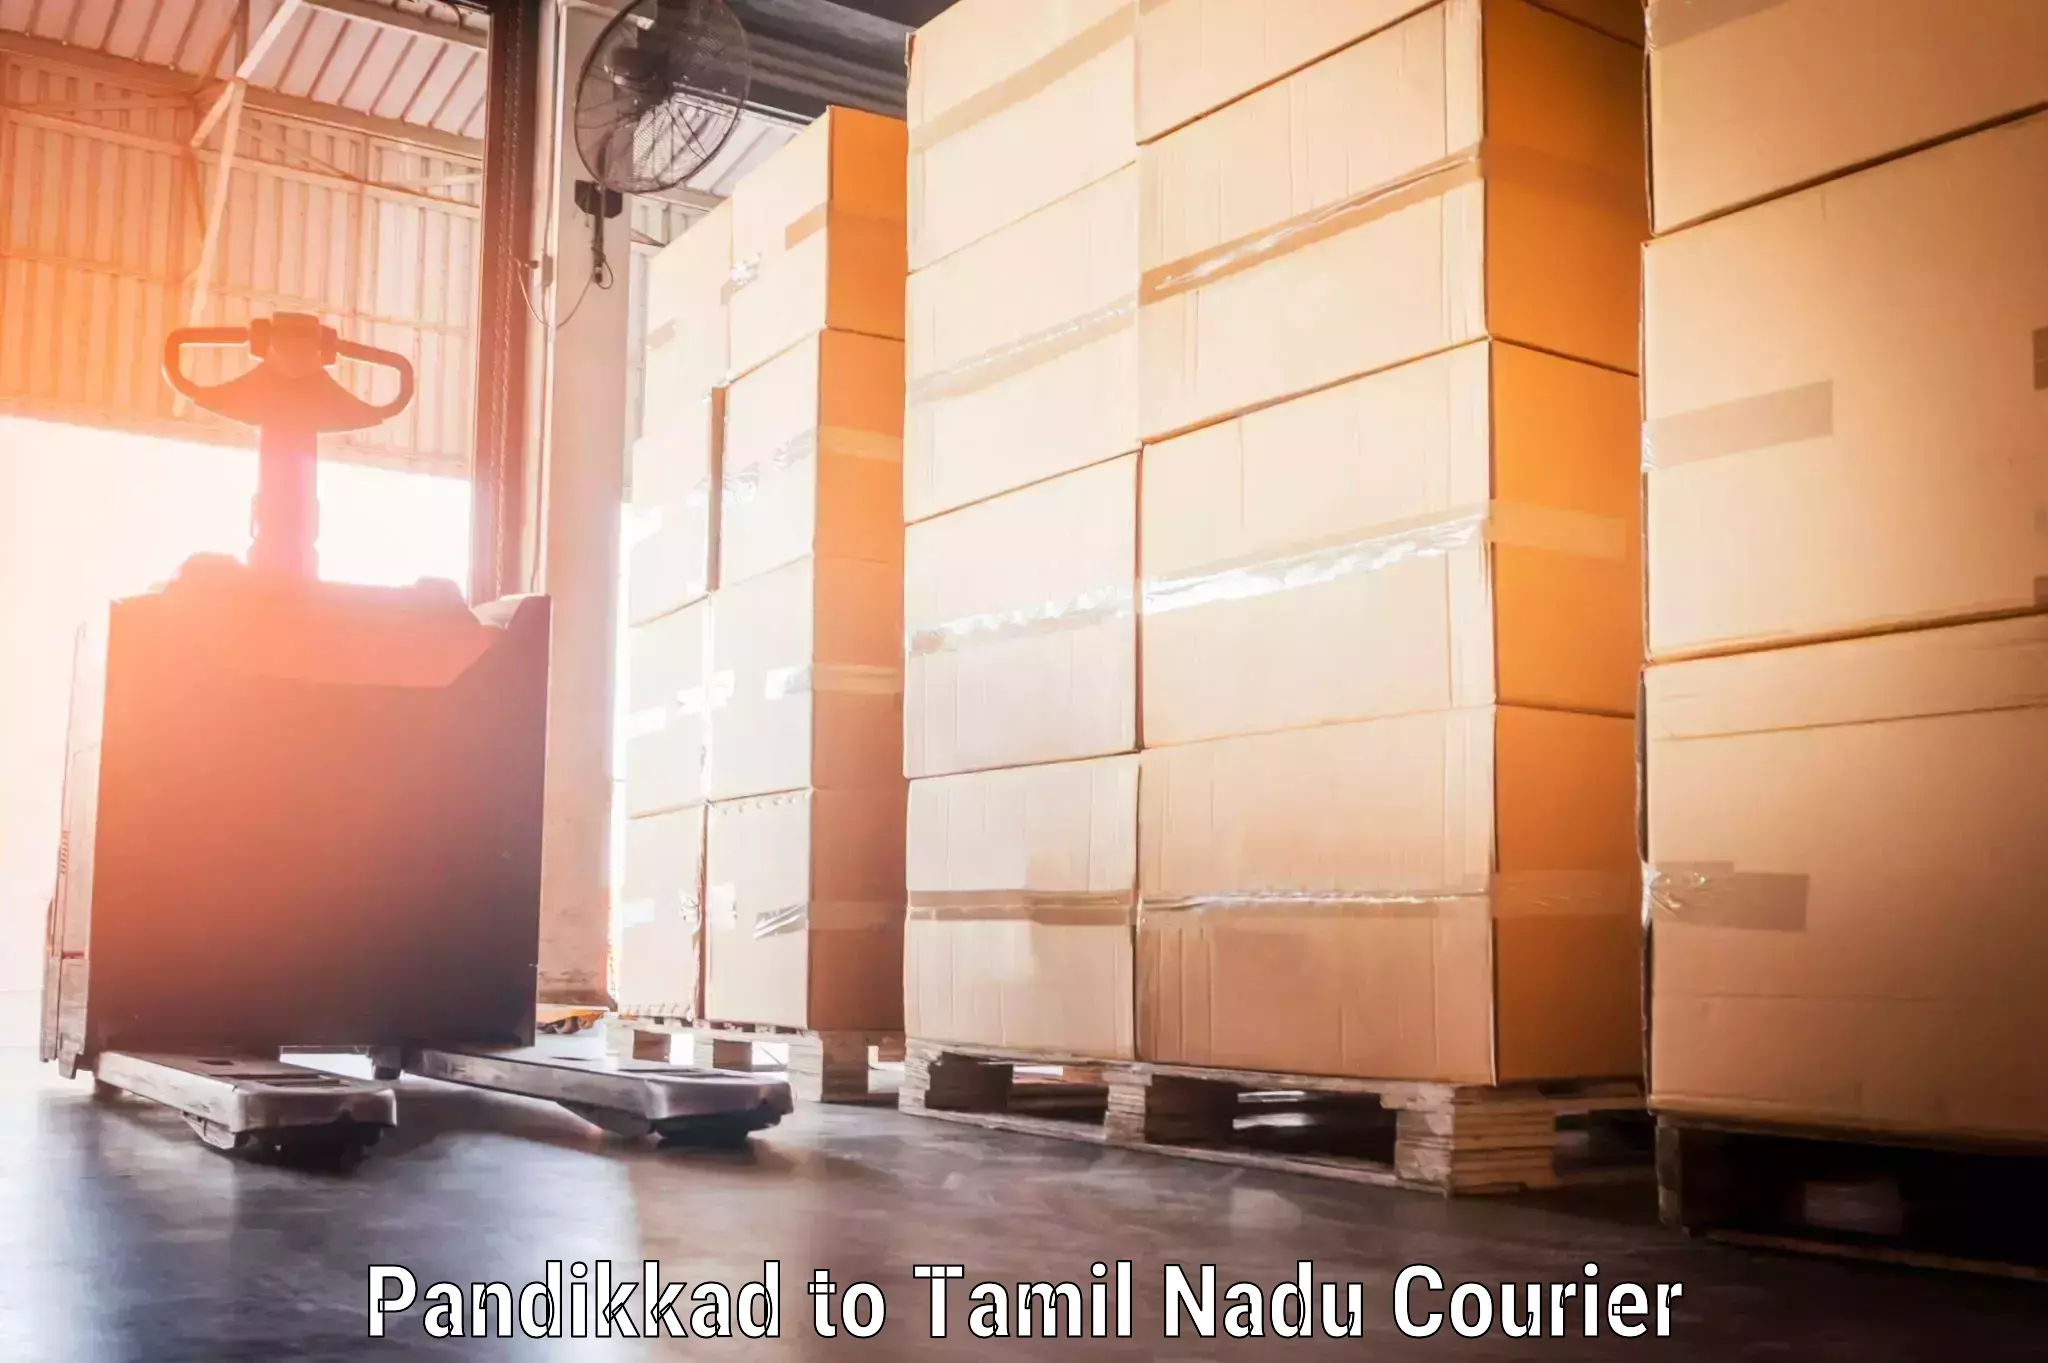 Baggage shipping optimization Pandikkad to Tamil Nadu